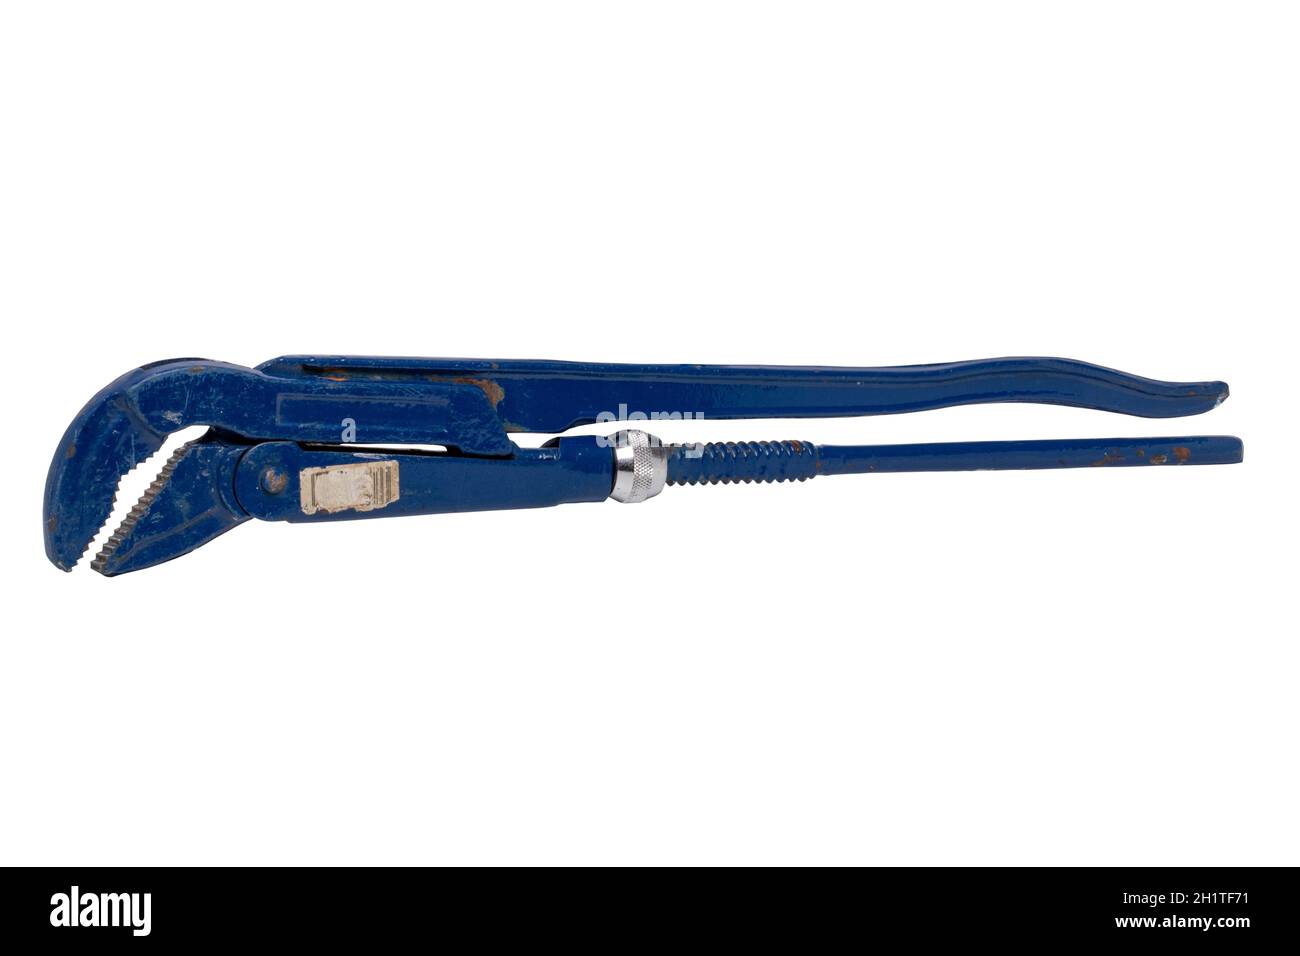 Outil Plumber isolé. Gros plan d'une clé à tube bleue réglable, d'une clé, d'une pince ou d'un outil de plomberie isolés sur un fond blanc. Masque. Macr Banque D'Images